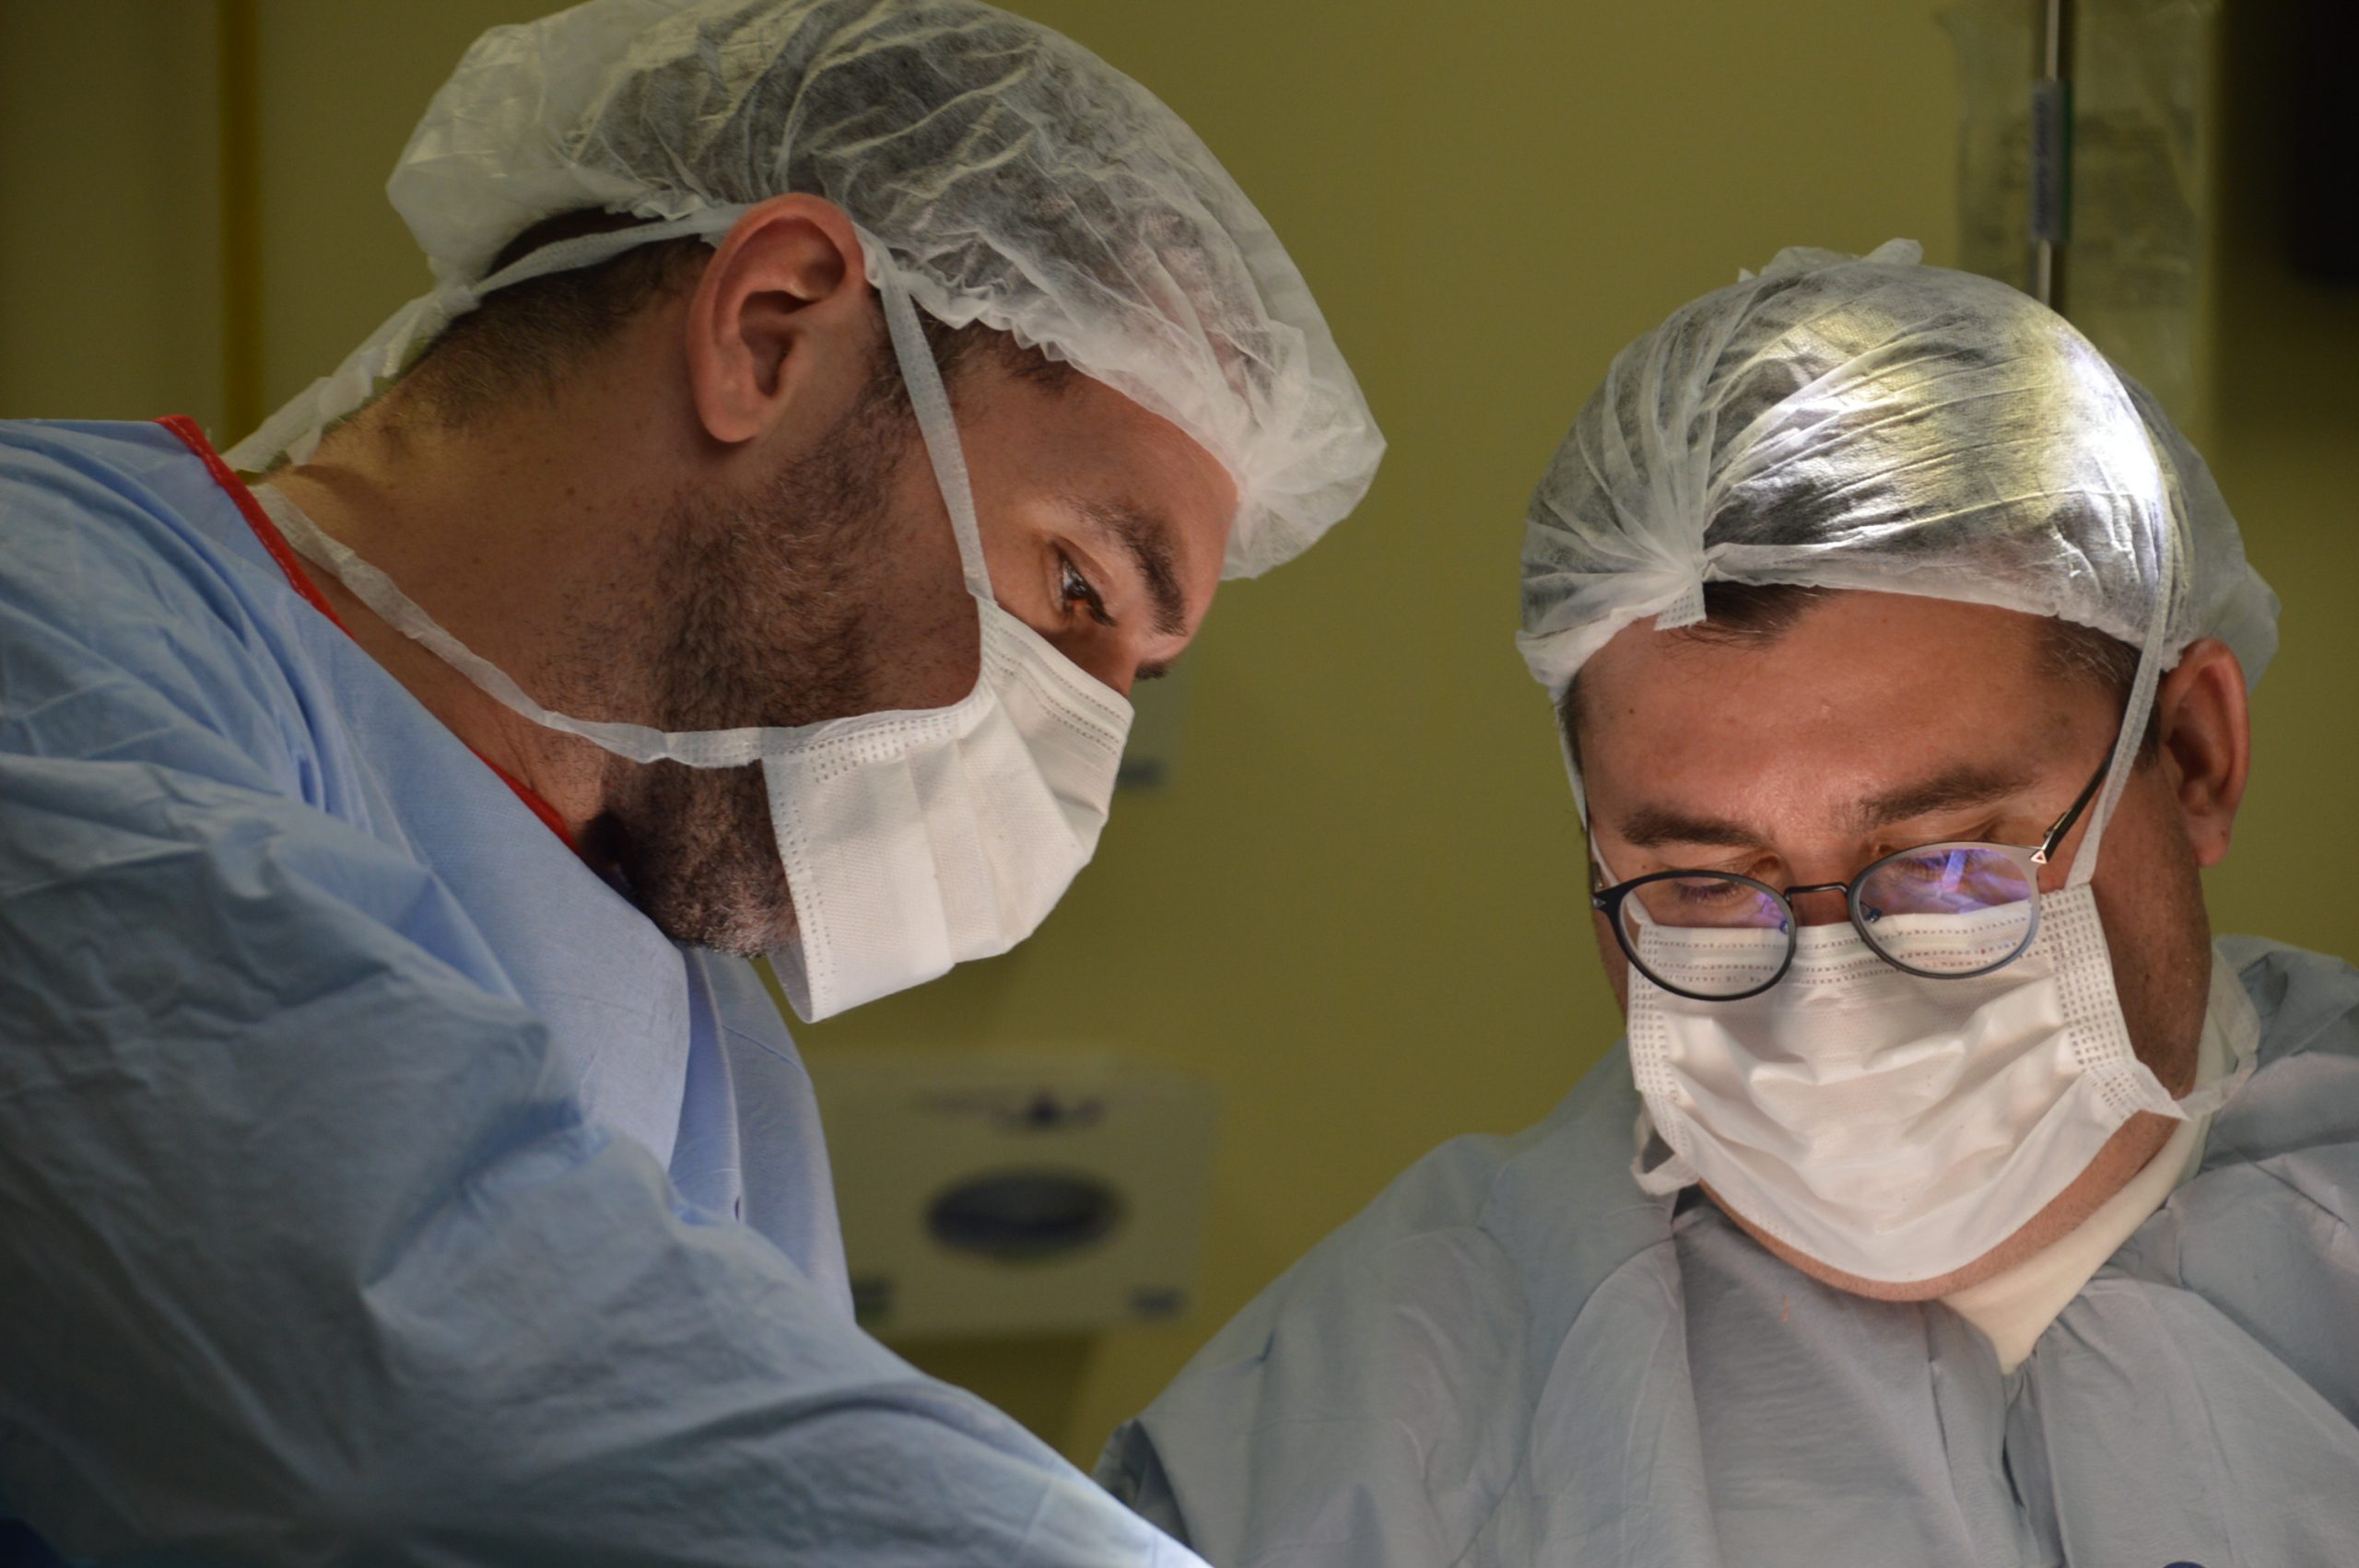 Cirurgia com material inédito no estado é realizado no Hospital Santa Isabel